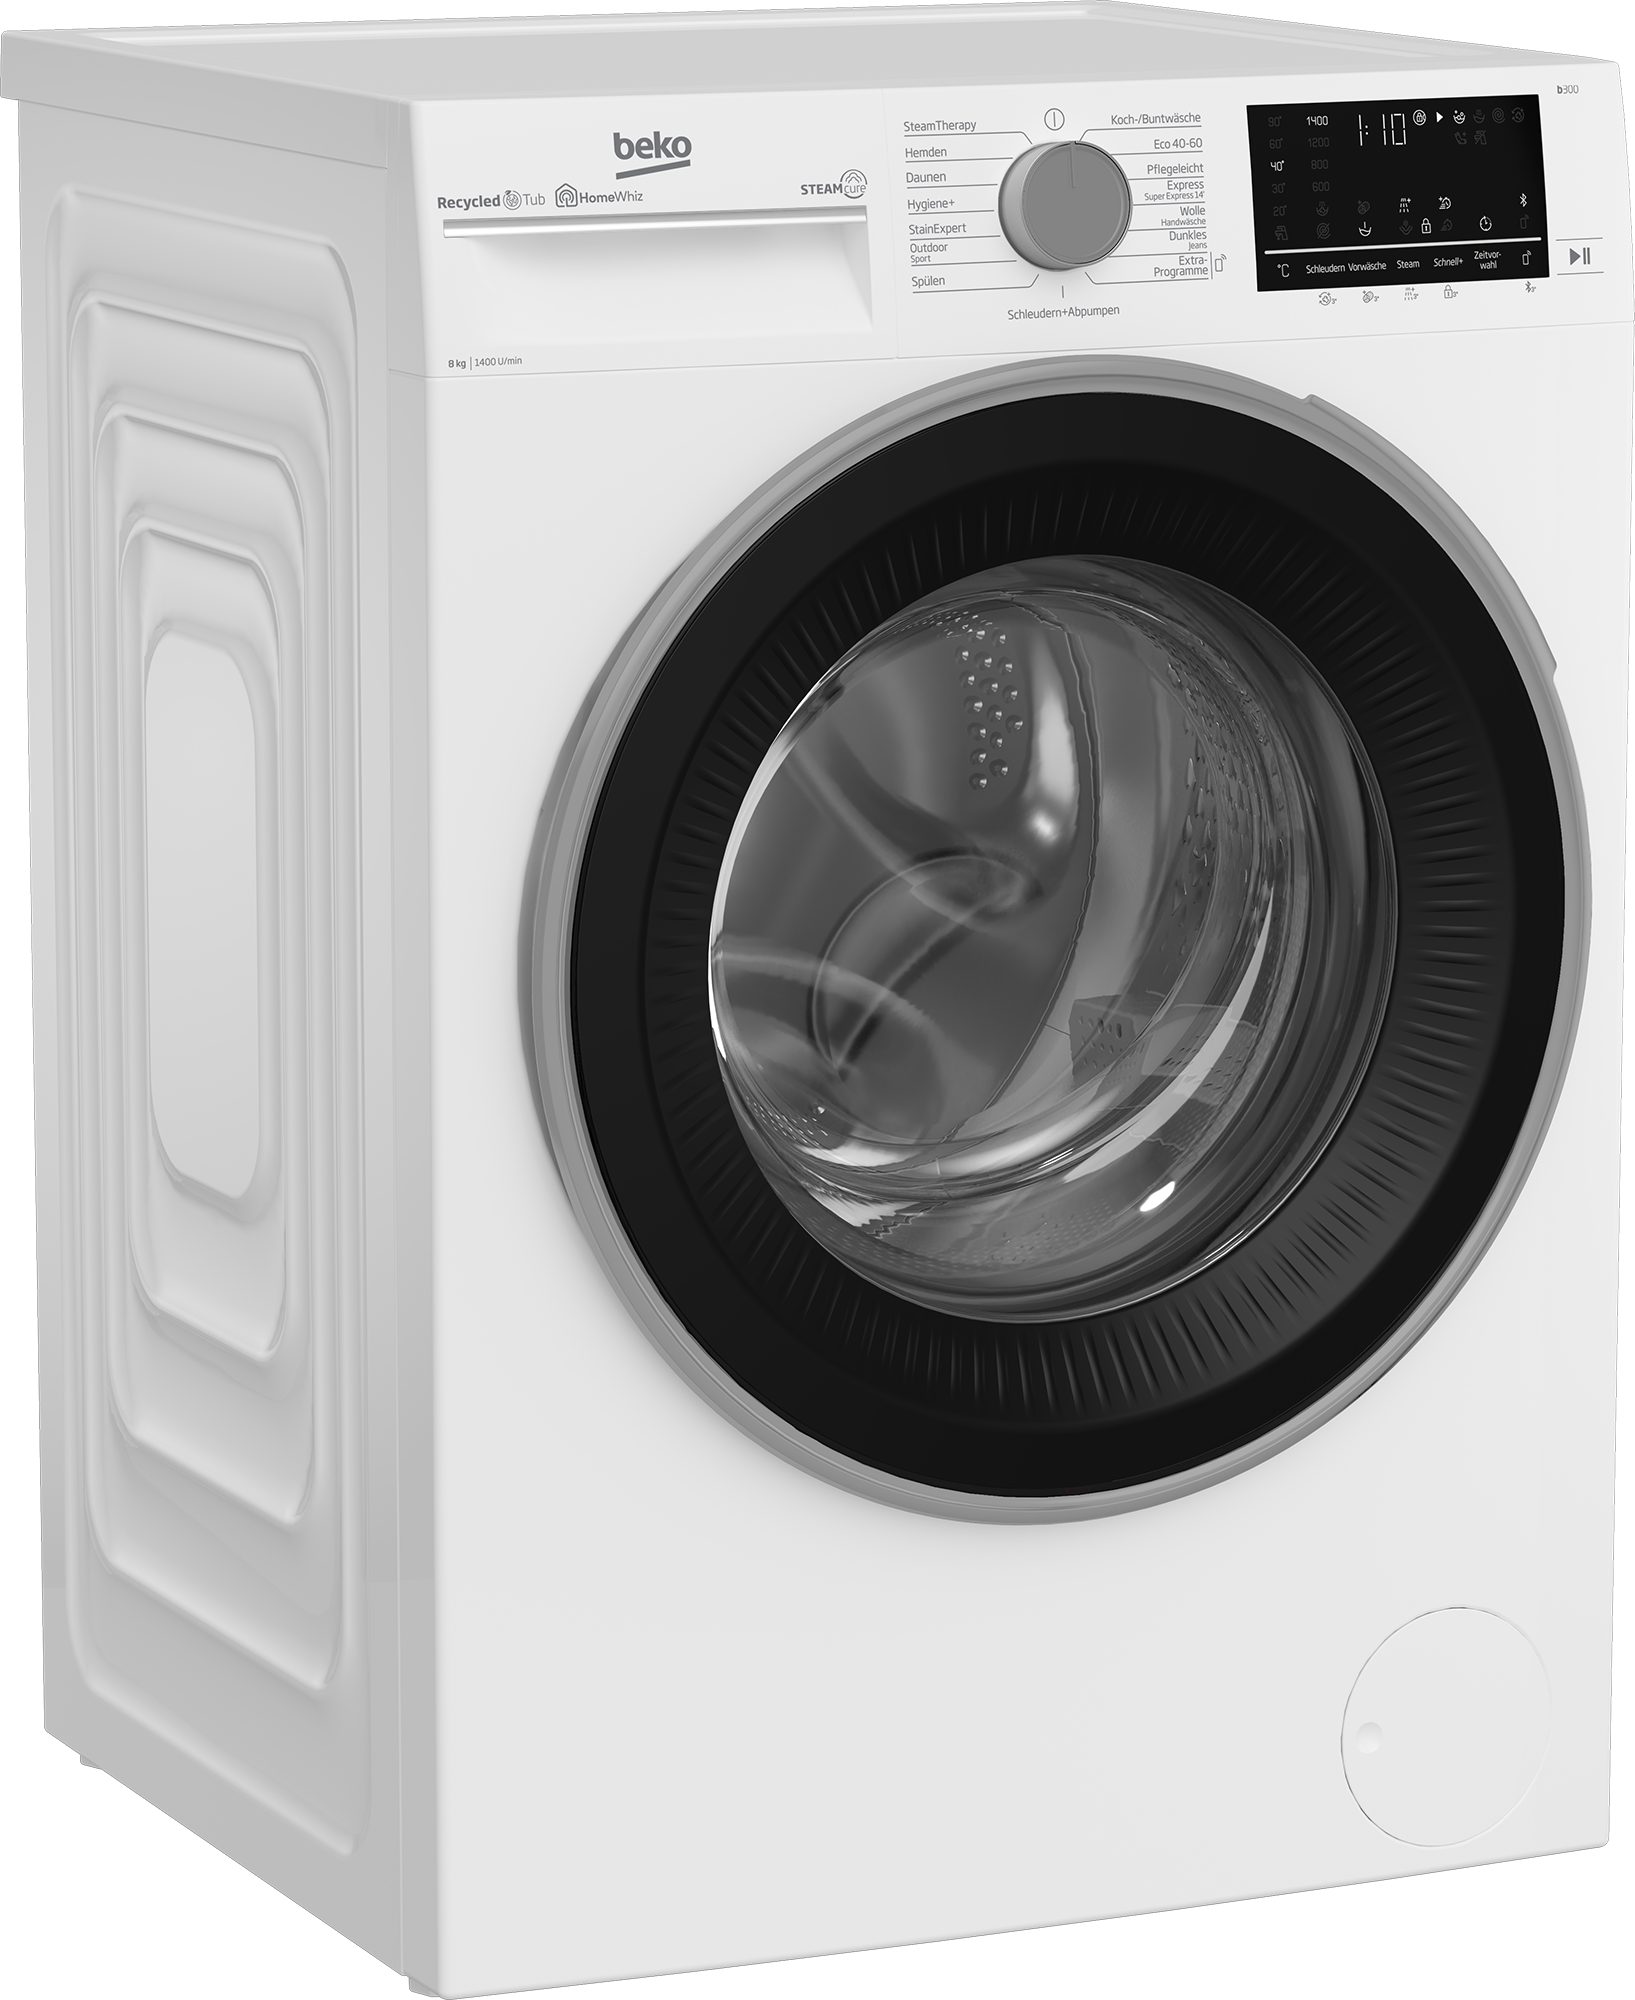 Waschmaschine kg, B3WFU58415W1, 8 allergenfrei 1400 U/min, - b300 BEKO SteamCure 99%